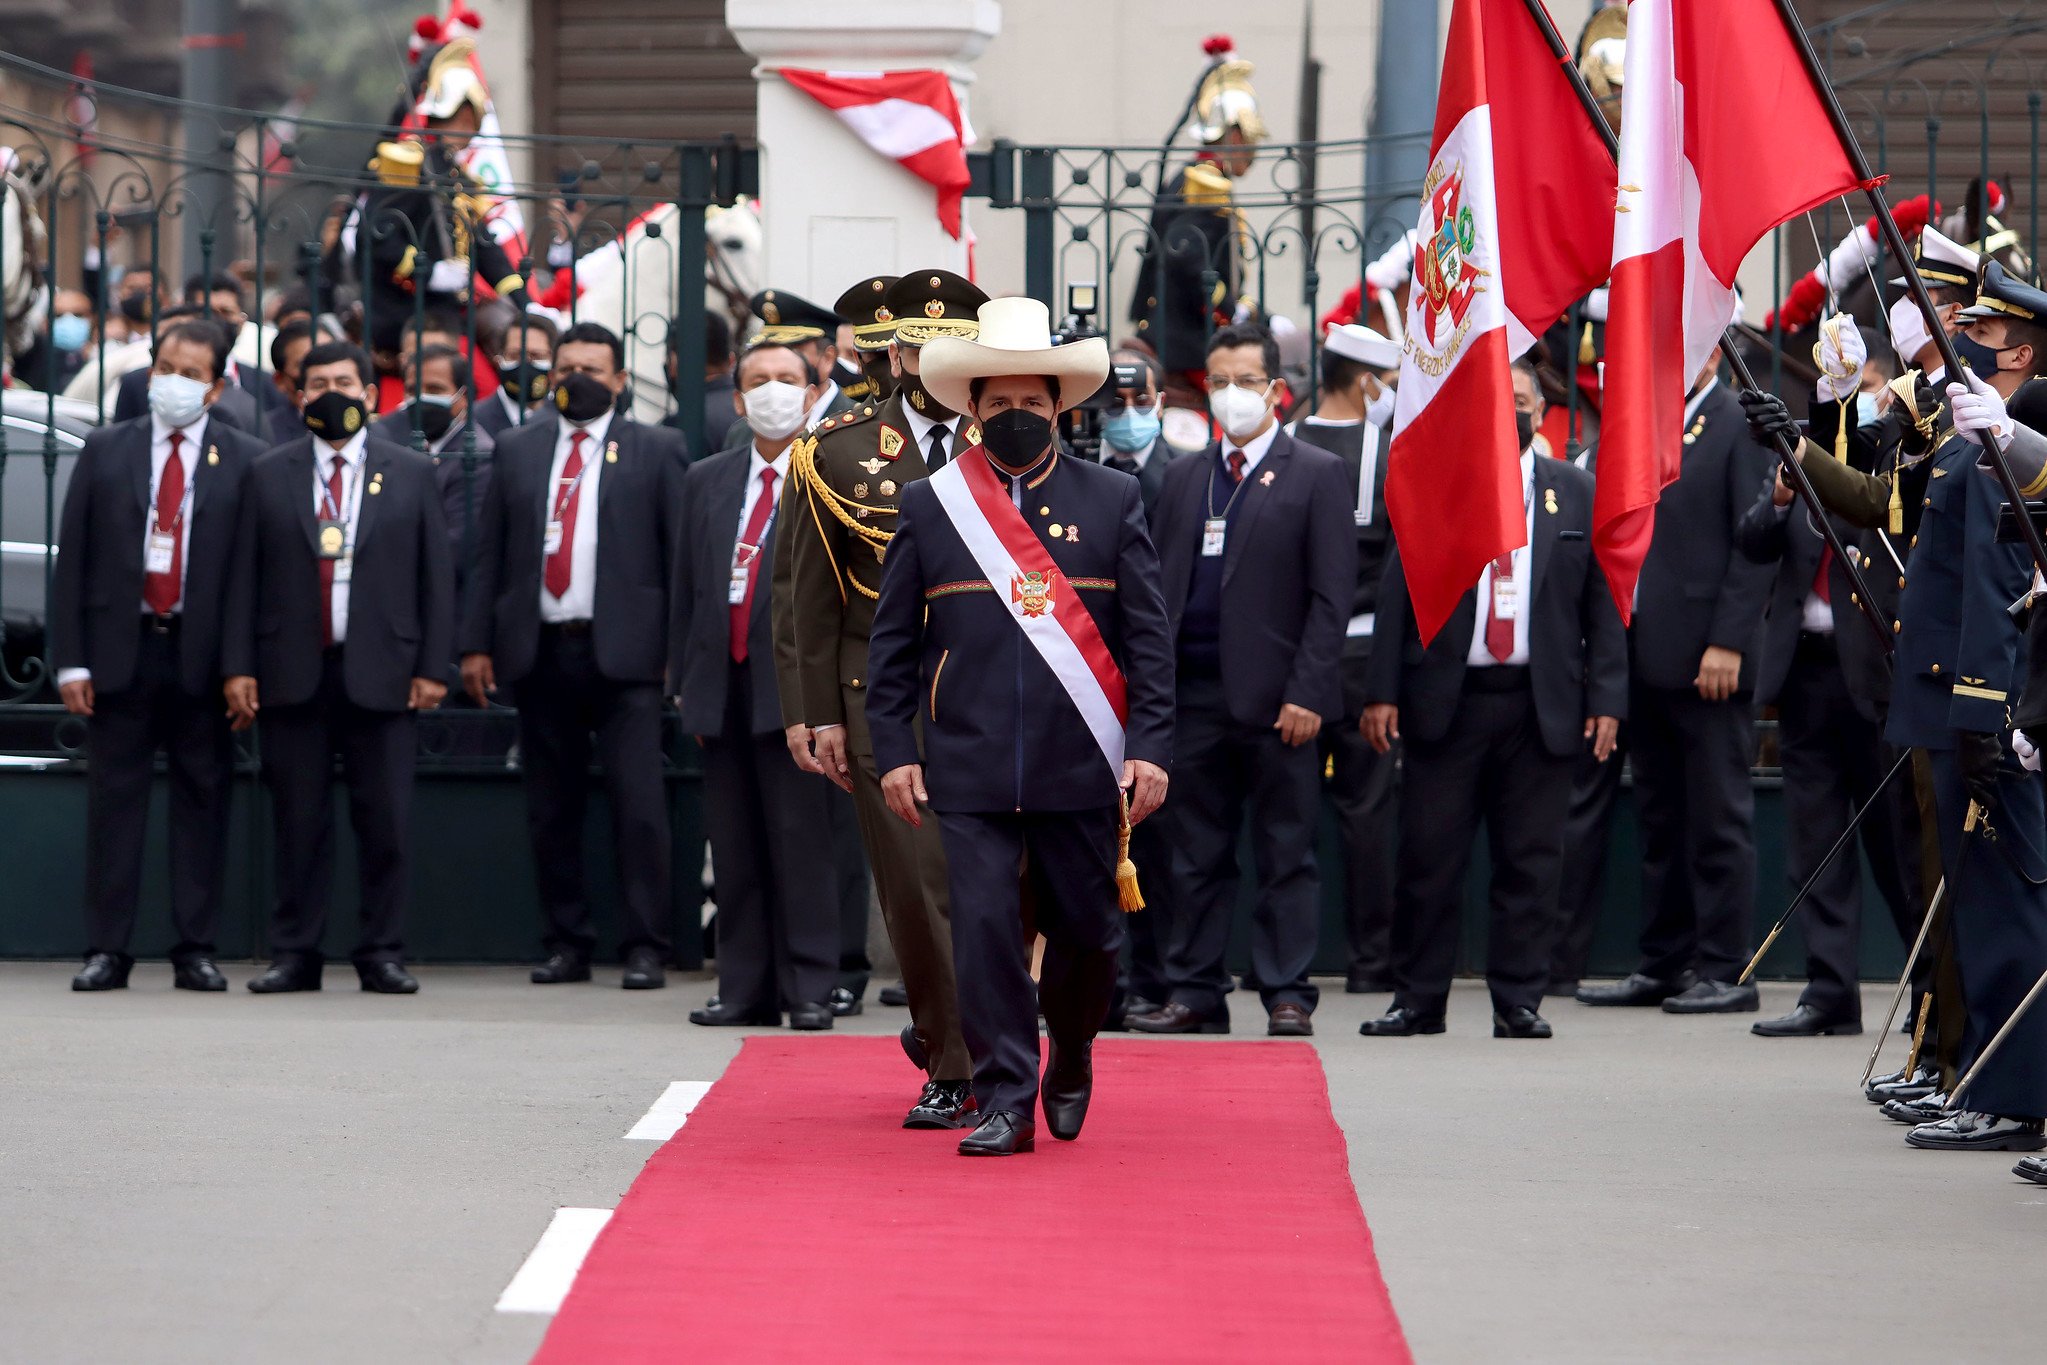 Peru in permanente crisis